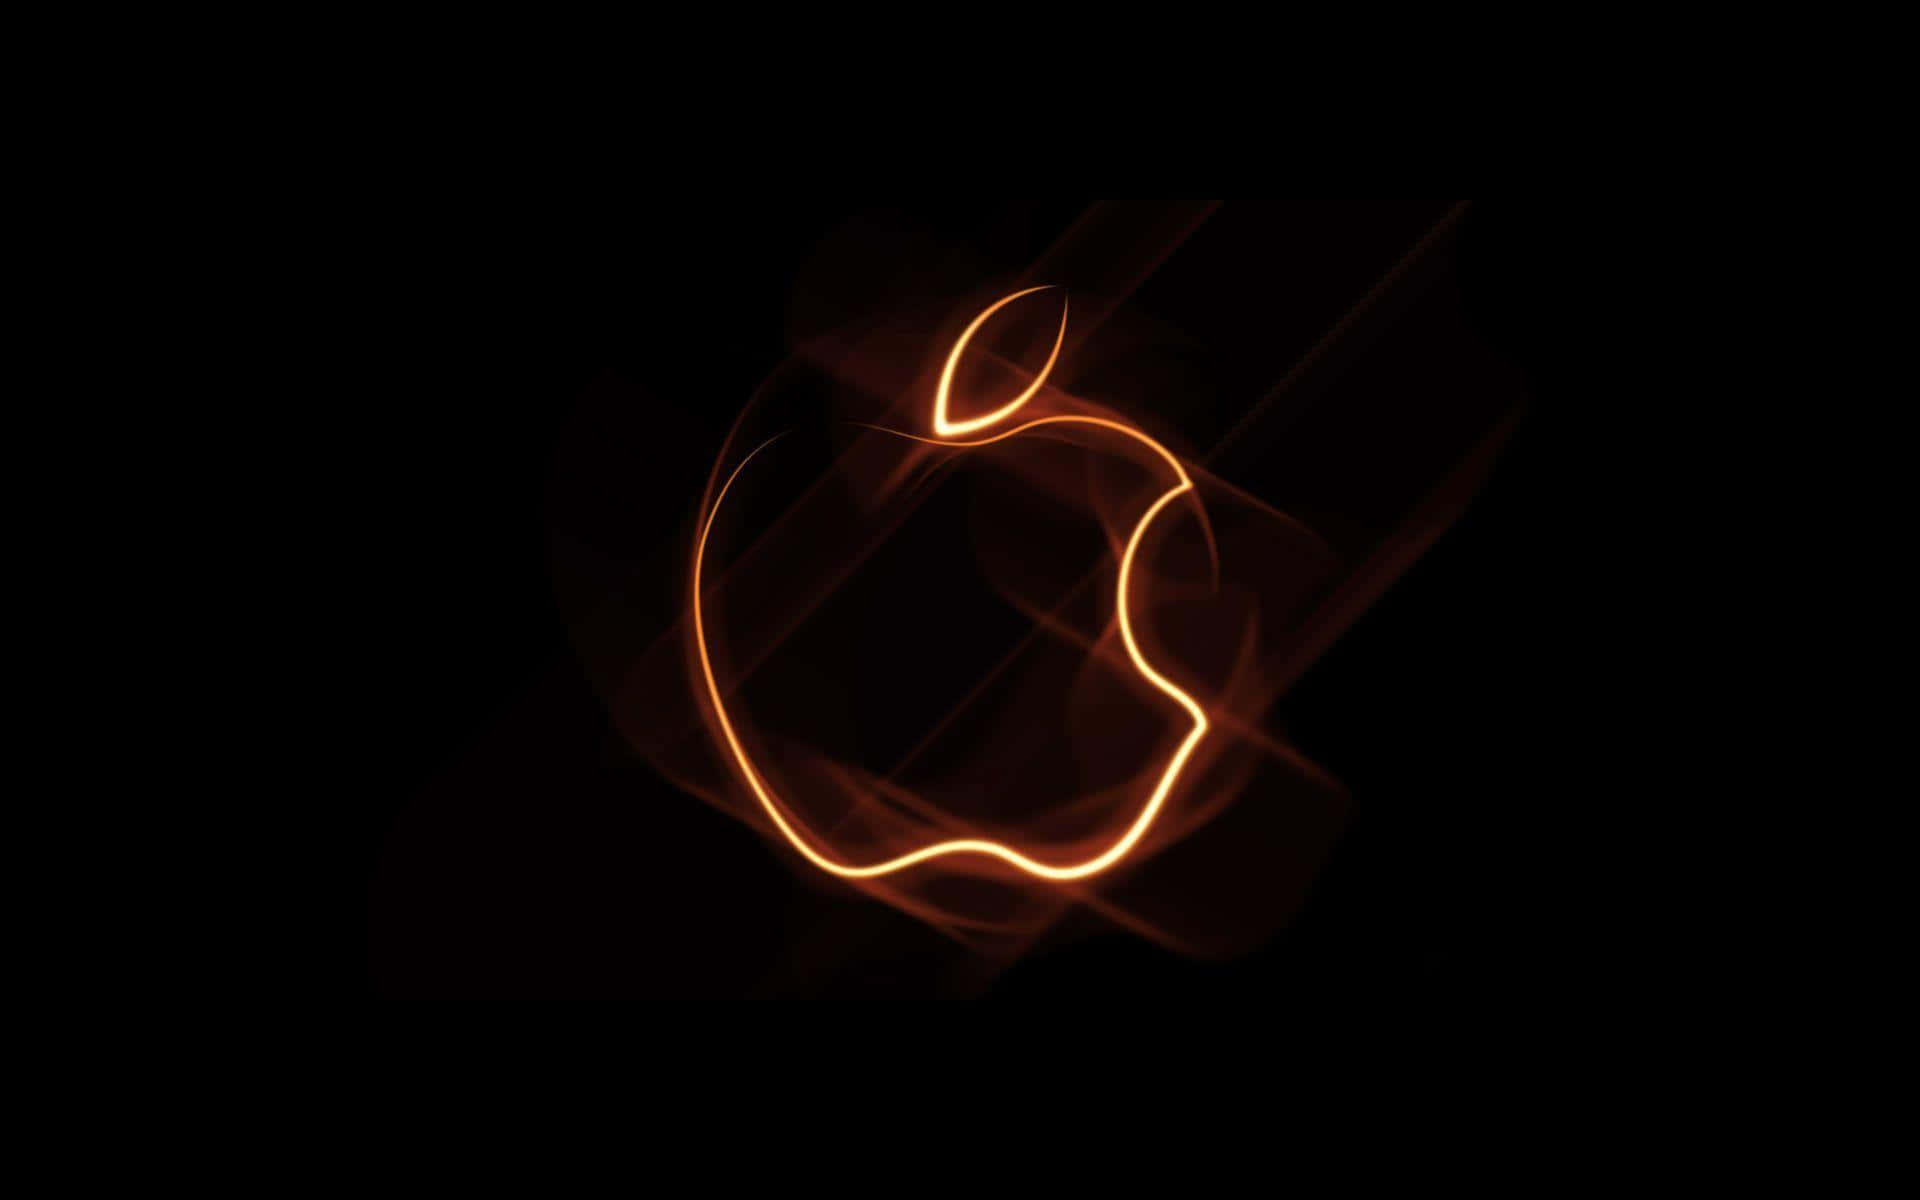 Migliorevisualizzazione Del Logo Apple Con Contorno Luminoso. Sfondo